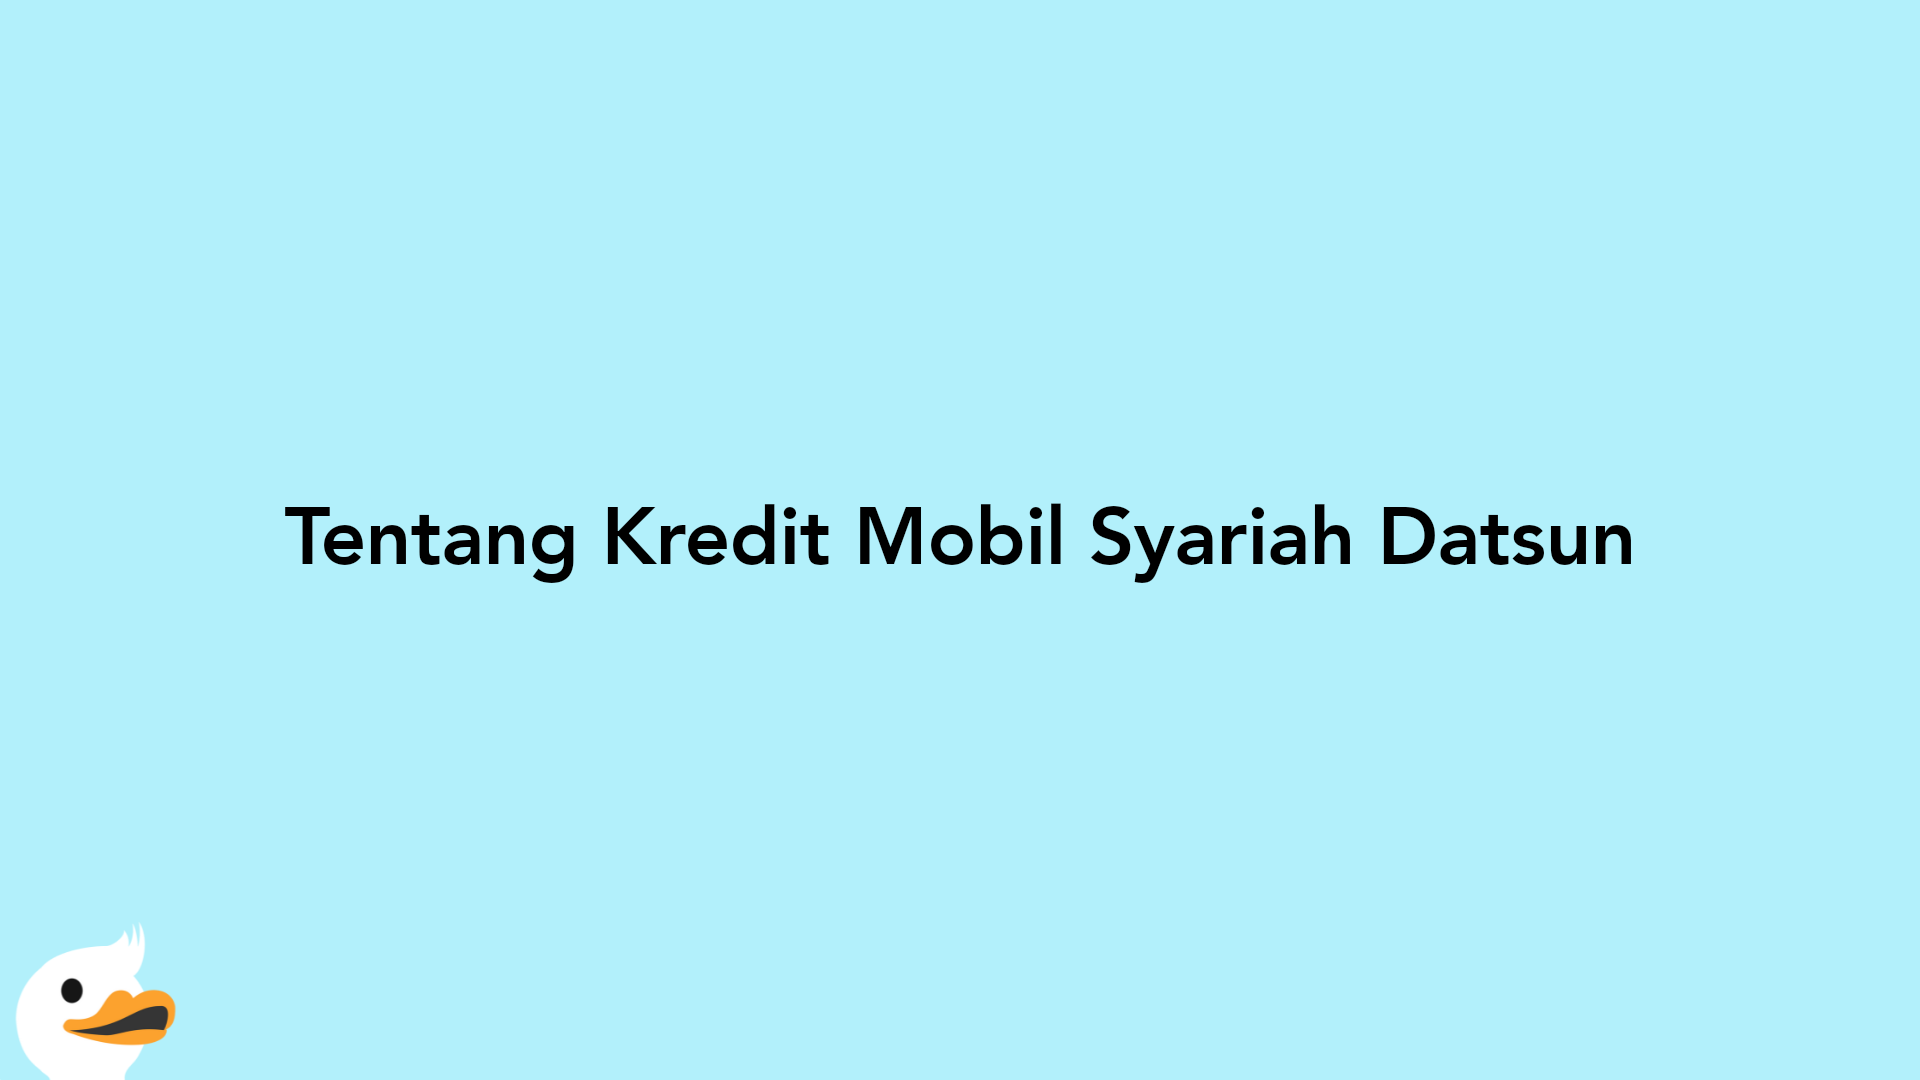 Tentang Kredit Mobil Syariah Datsun